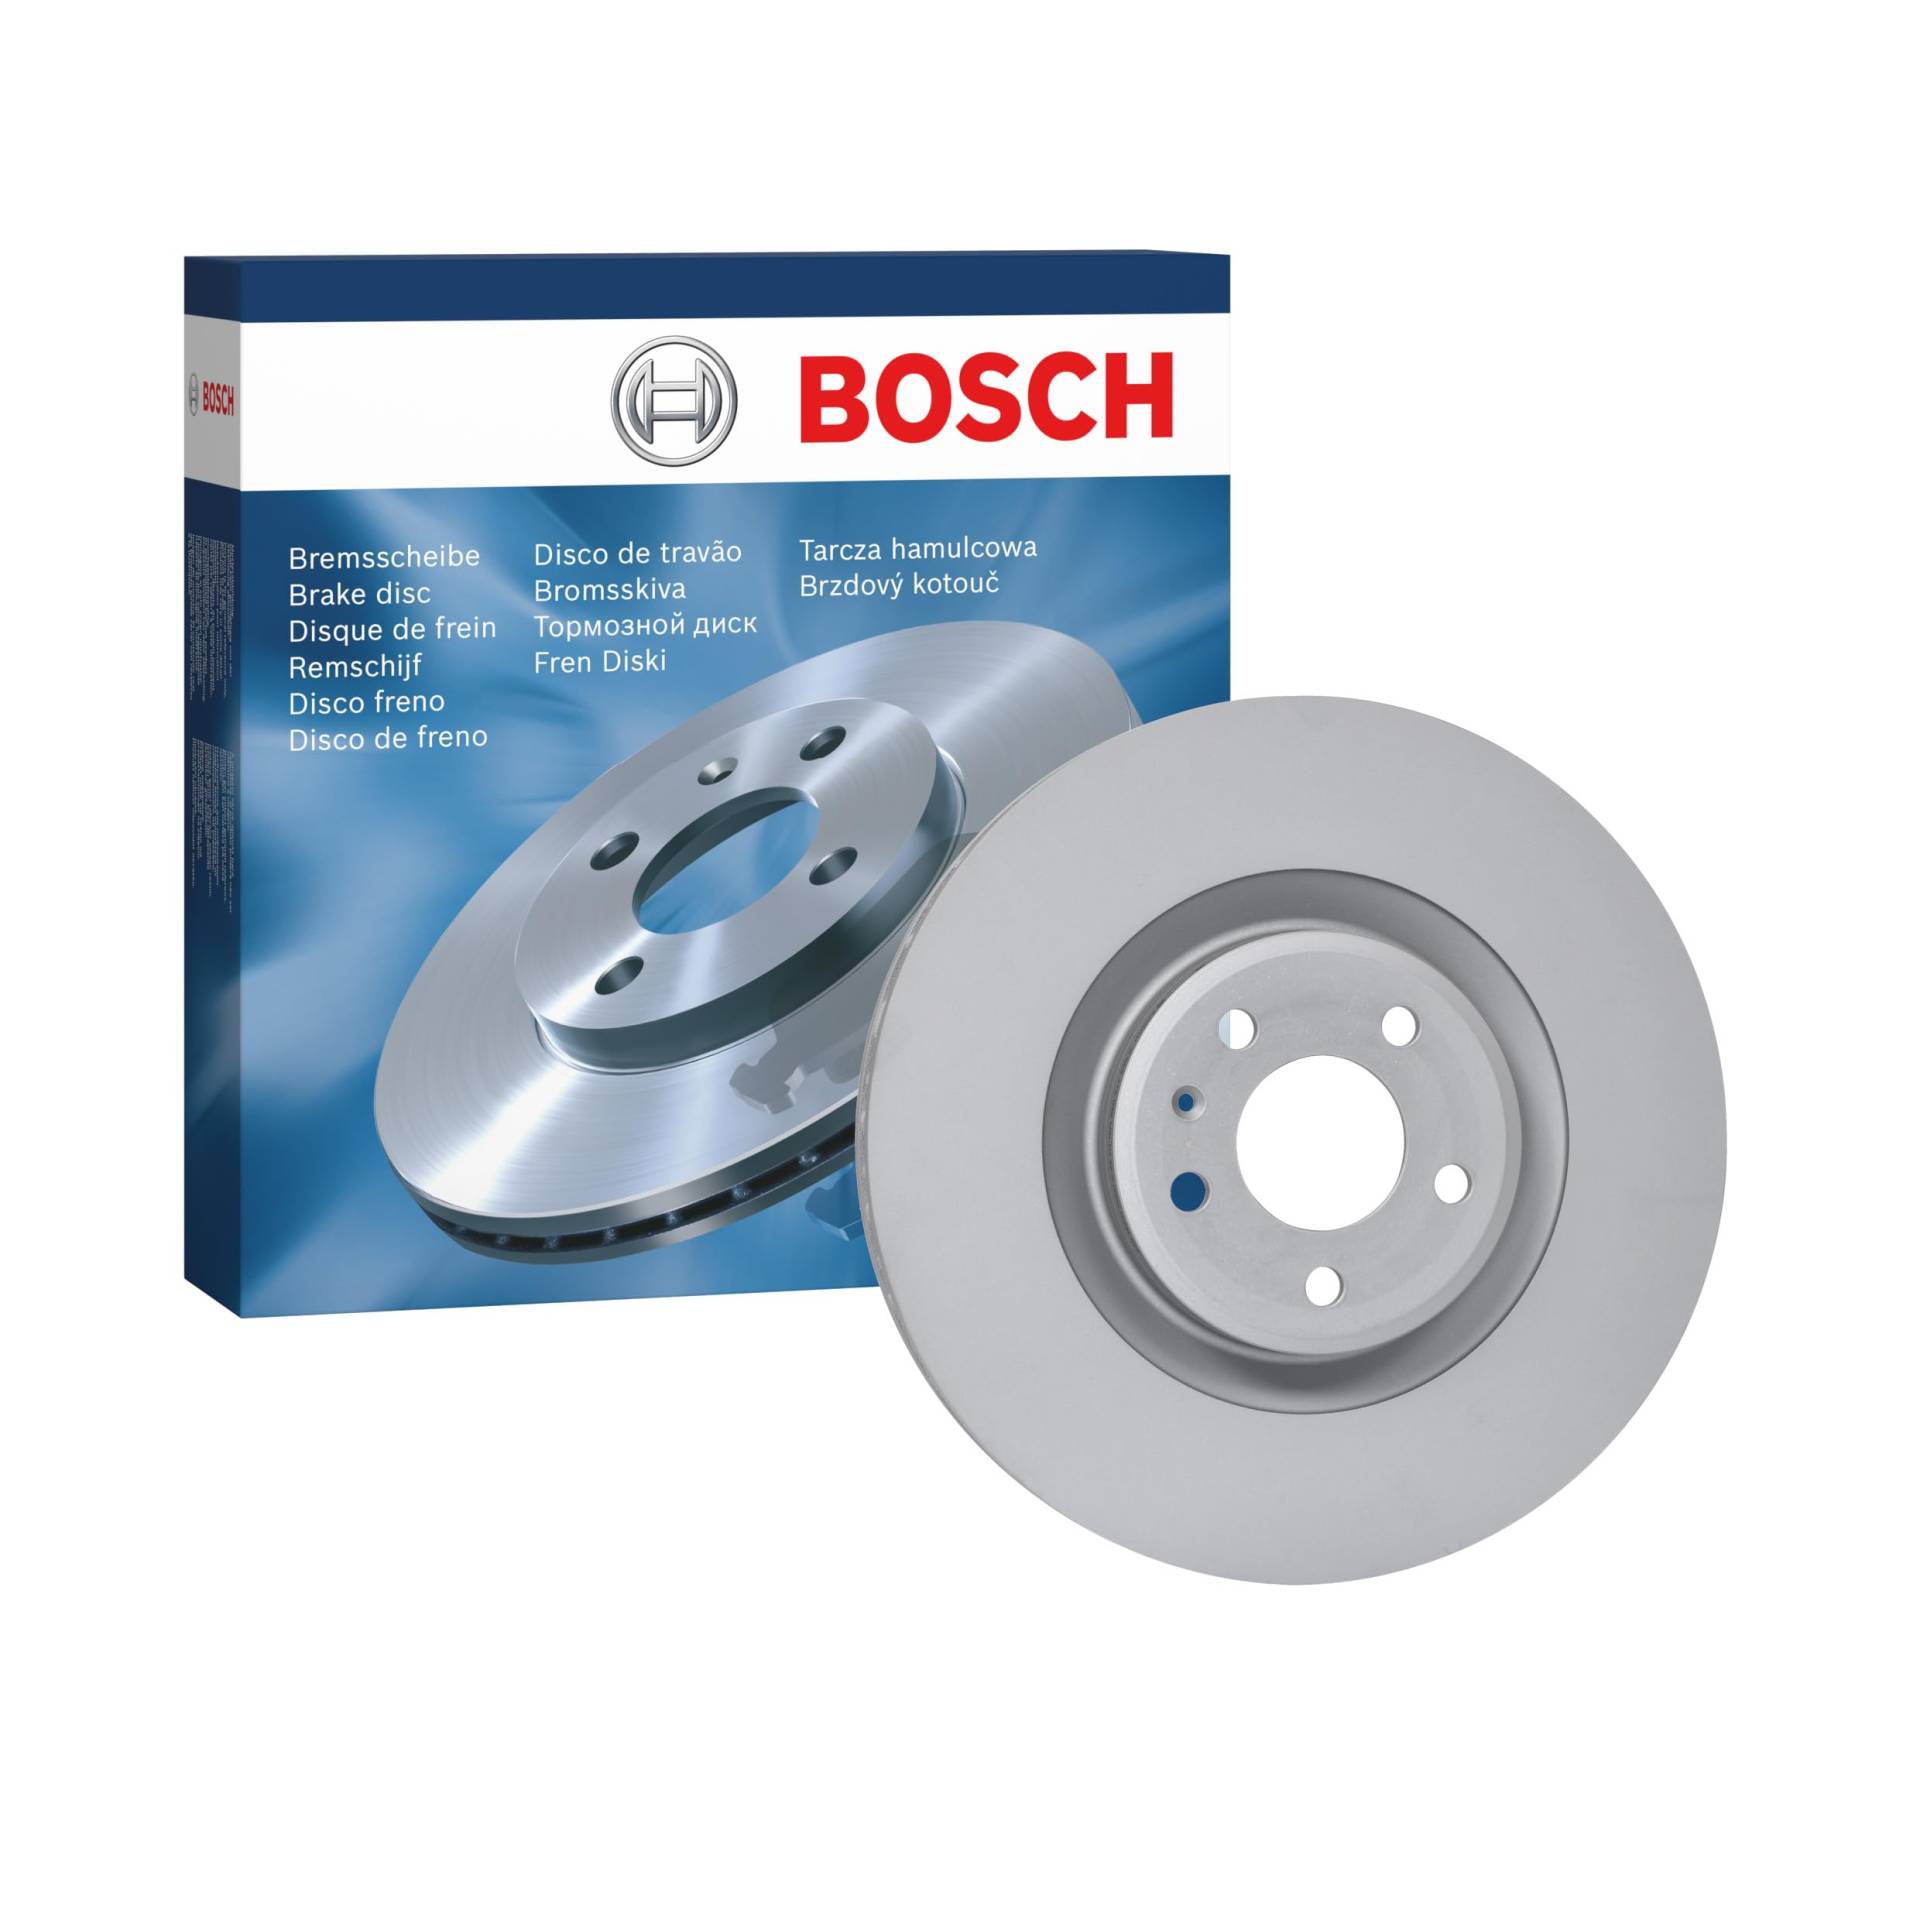 Bosch BD2447 Bremsscheiben - Vorderachse - ECE-R90 Zertifizierung - eine Bremsscheibe von Bosch Automotive